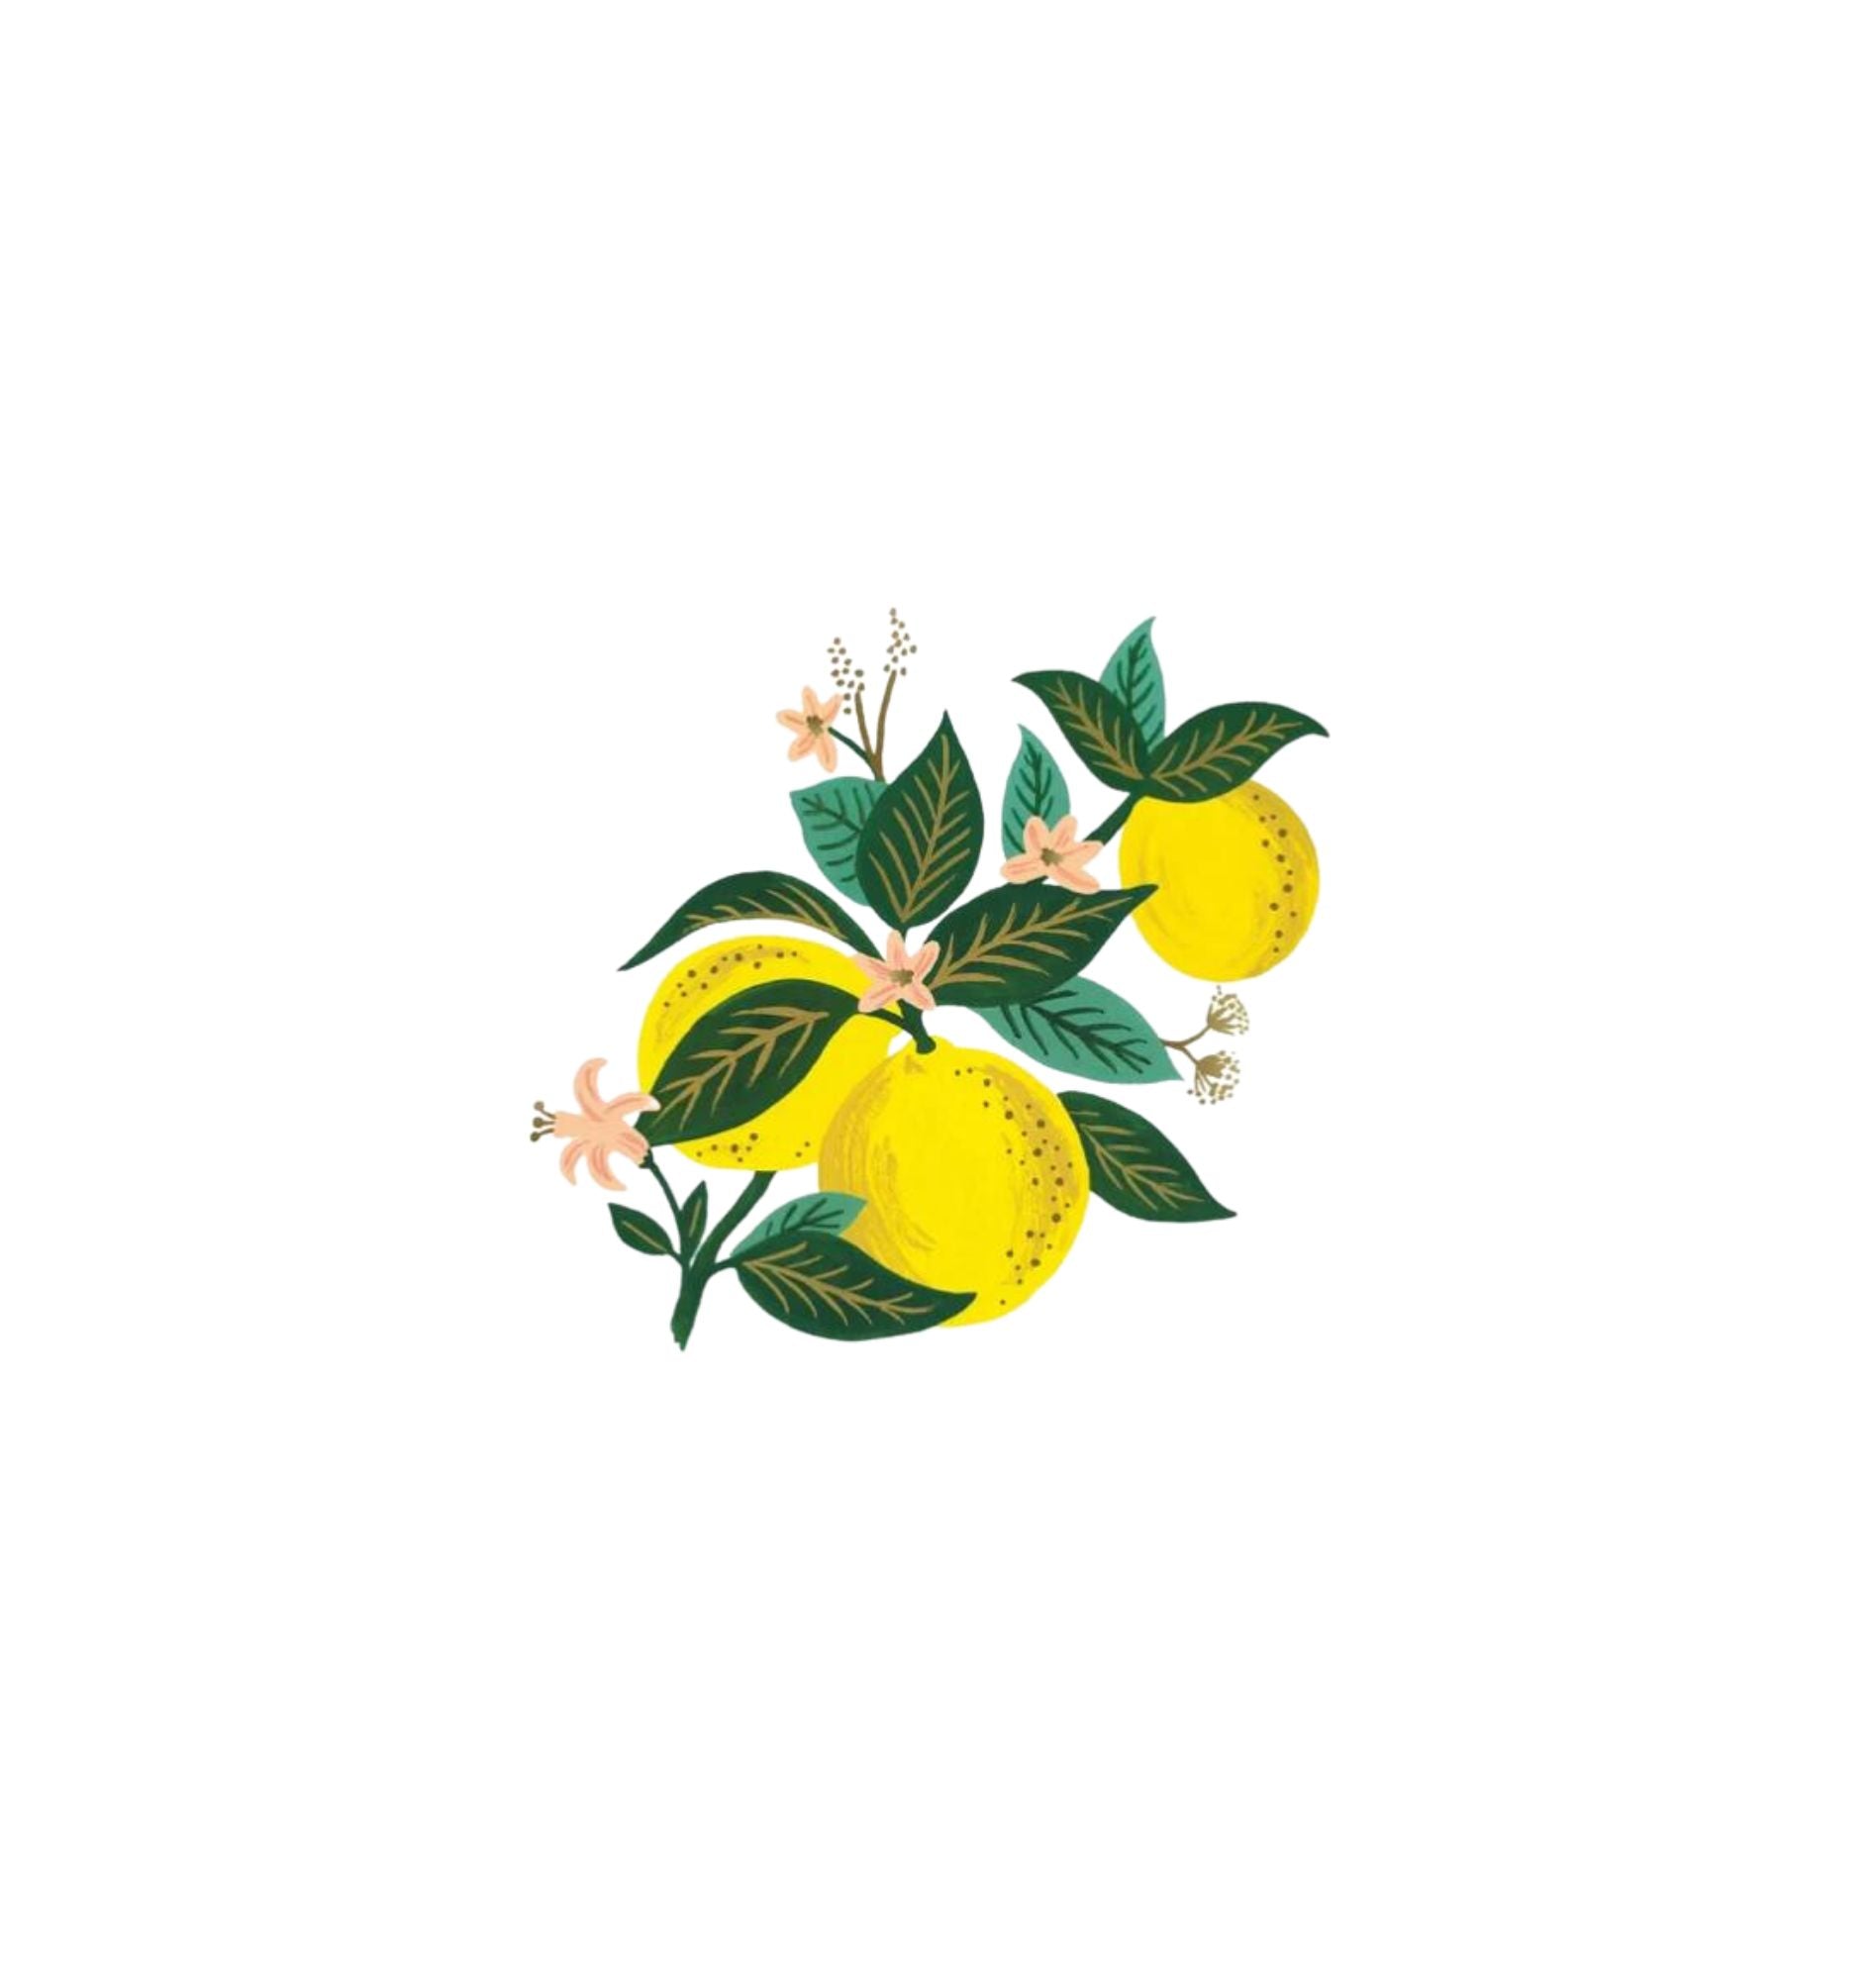 Lemon Blossom Art Print